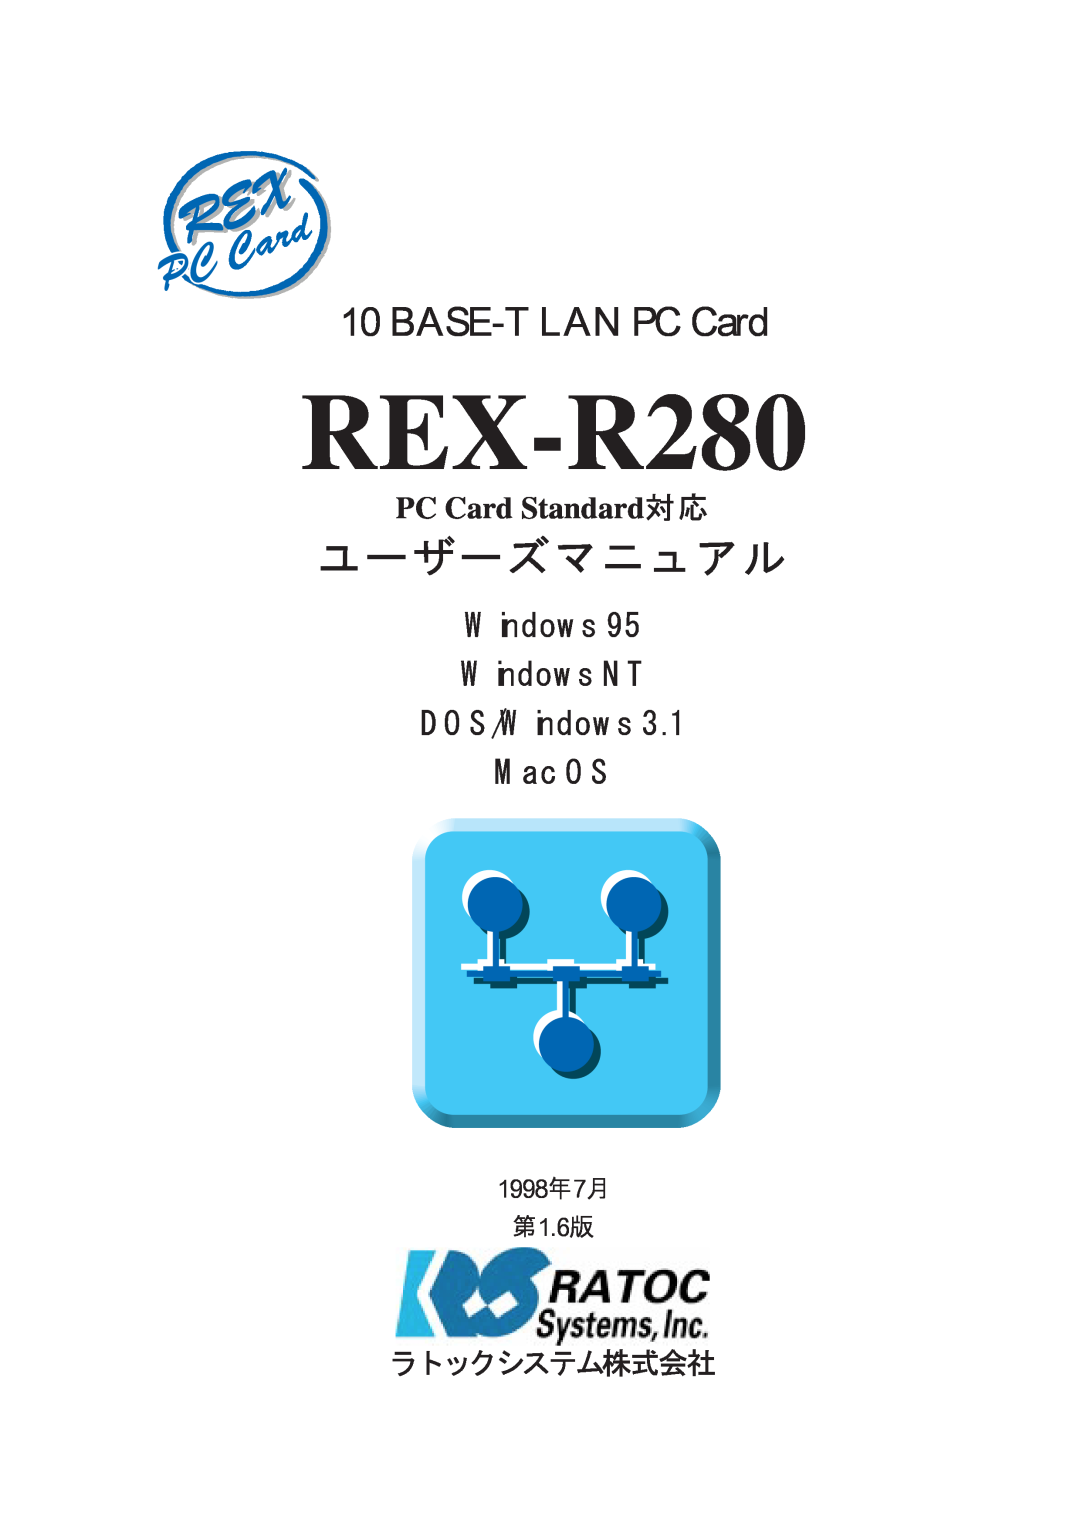 Ratoc Systems REX-R280 manual 1998年7月 第1.6版, ユーザーズマニュアル, BASE-T LAN PC Card, Windows Windows NT DOS/Windows Mac OS 